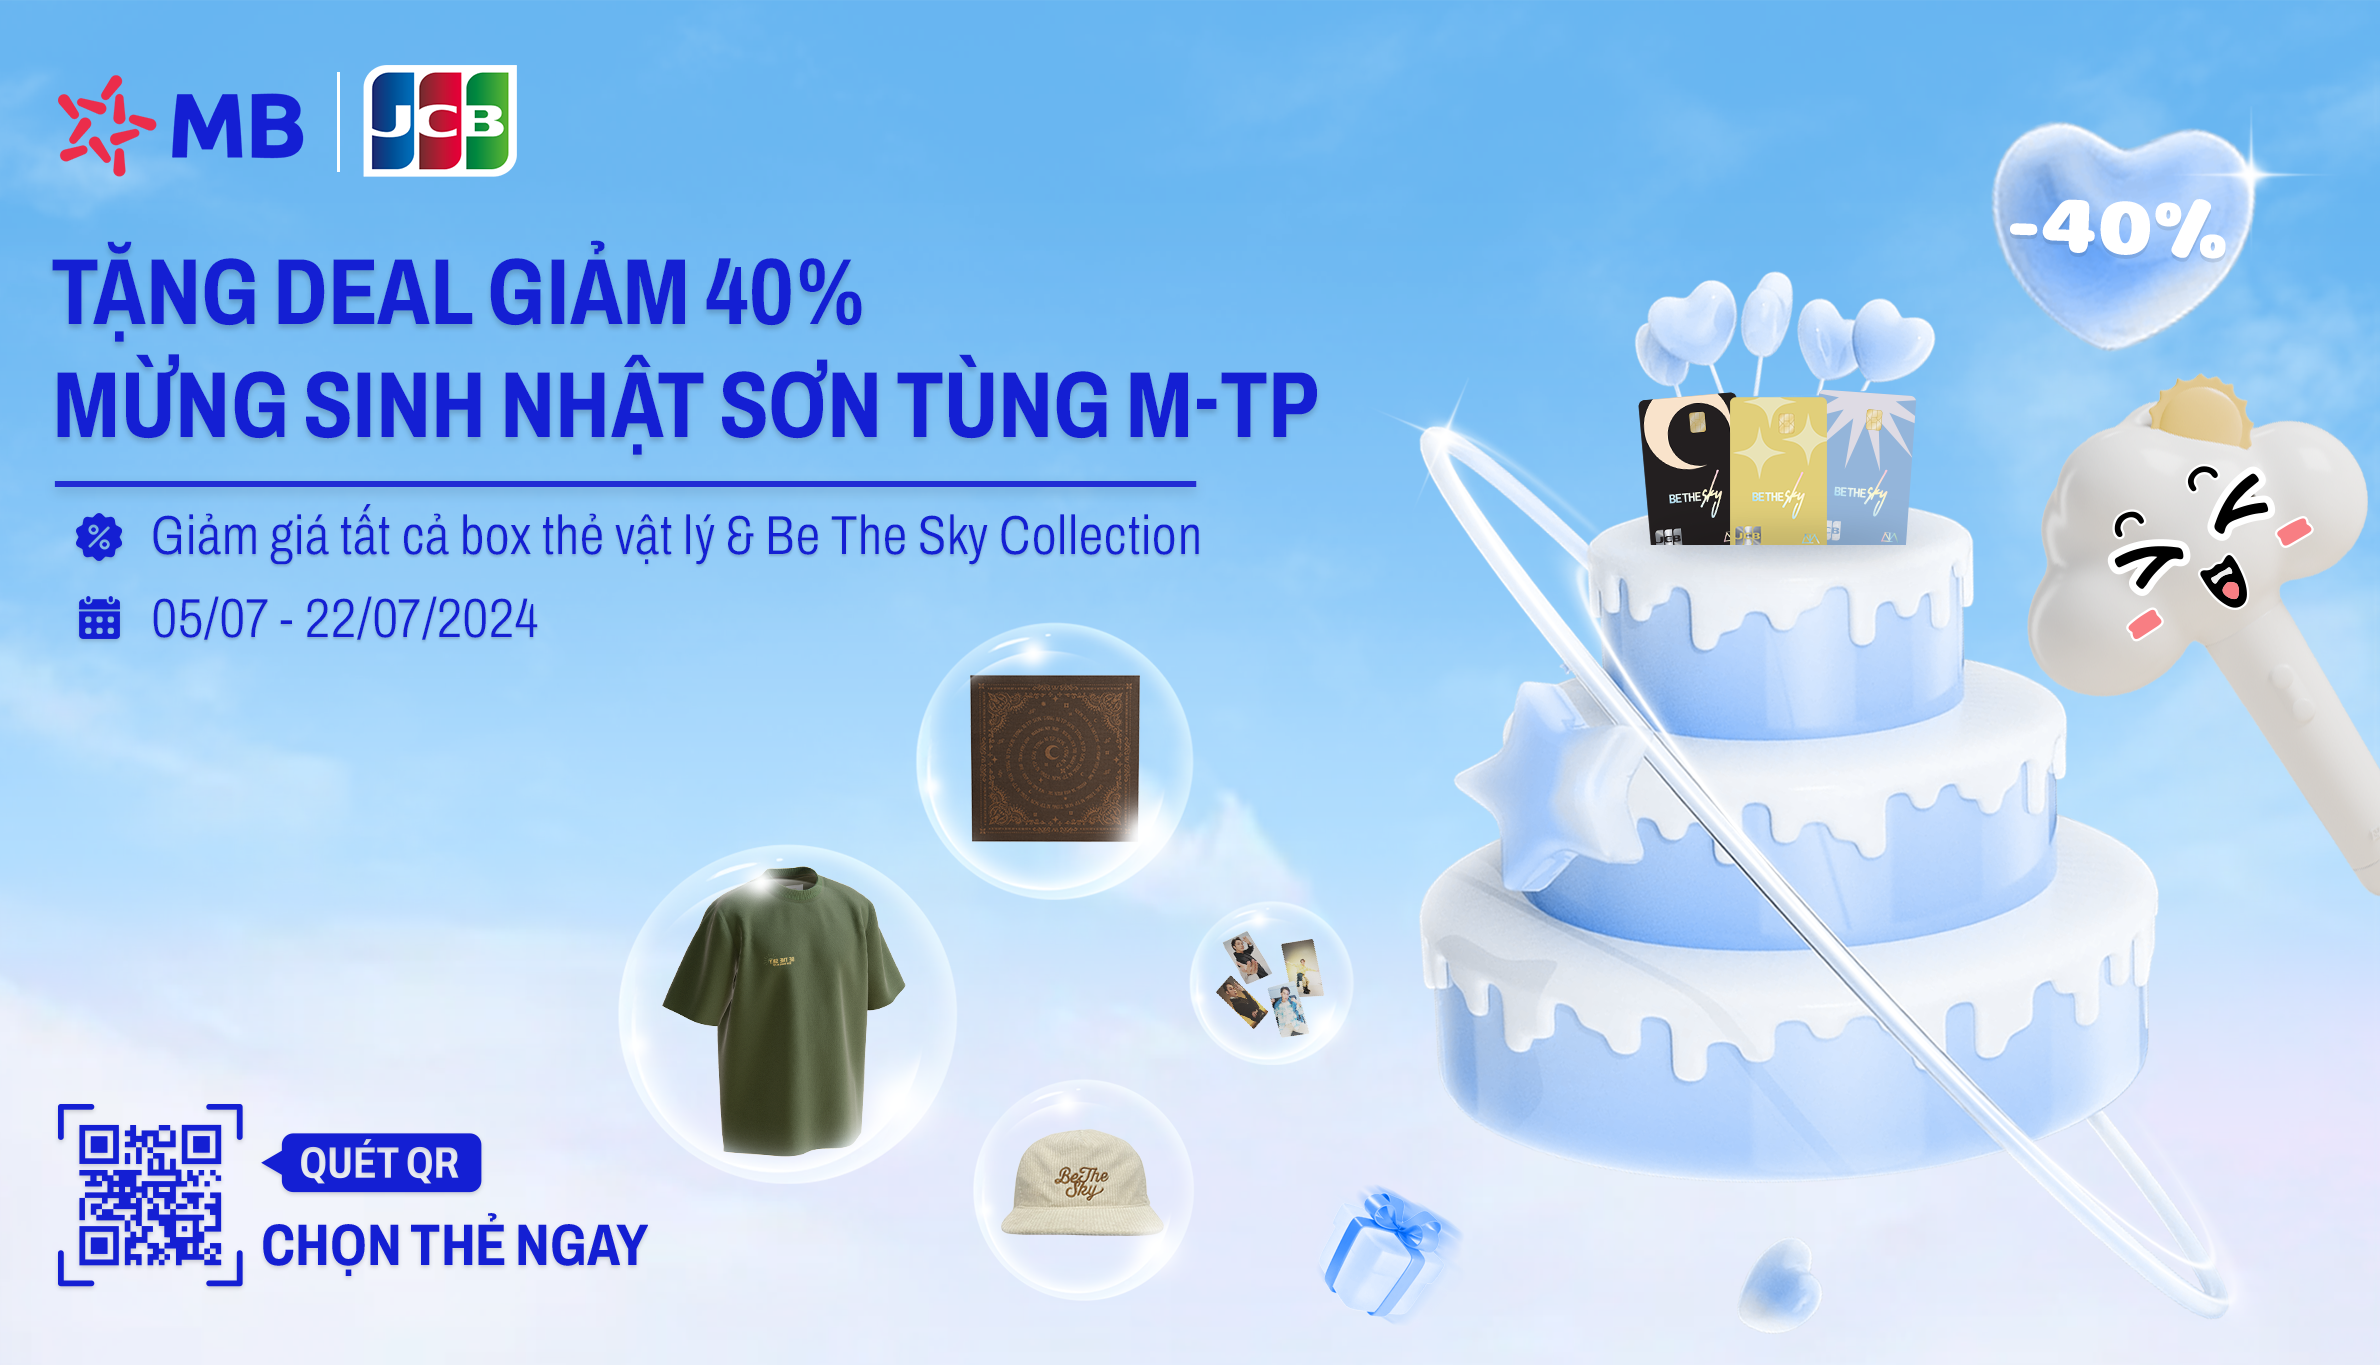 Chương trình giảm giá 40% chào mừng sinh nhật Sơn Tùng M-TP